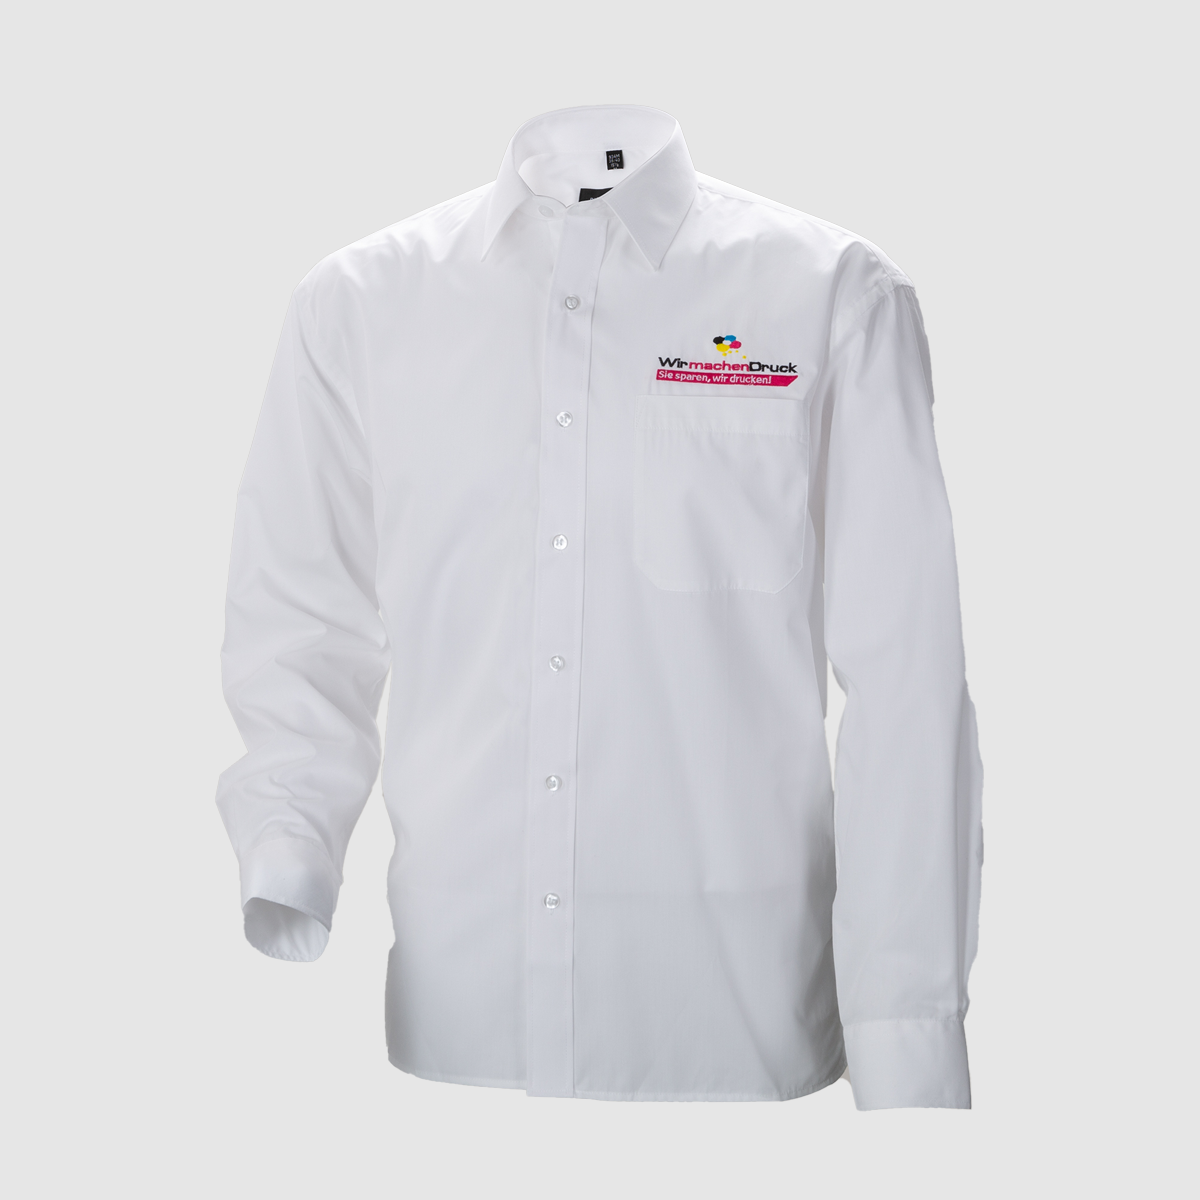 Weißes Hemd für Herren, individuell und hochwertig bestickt 